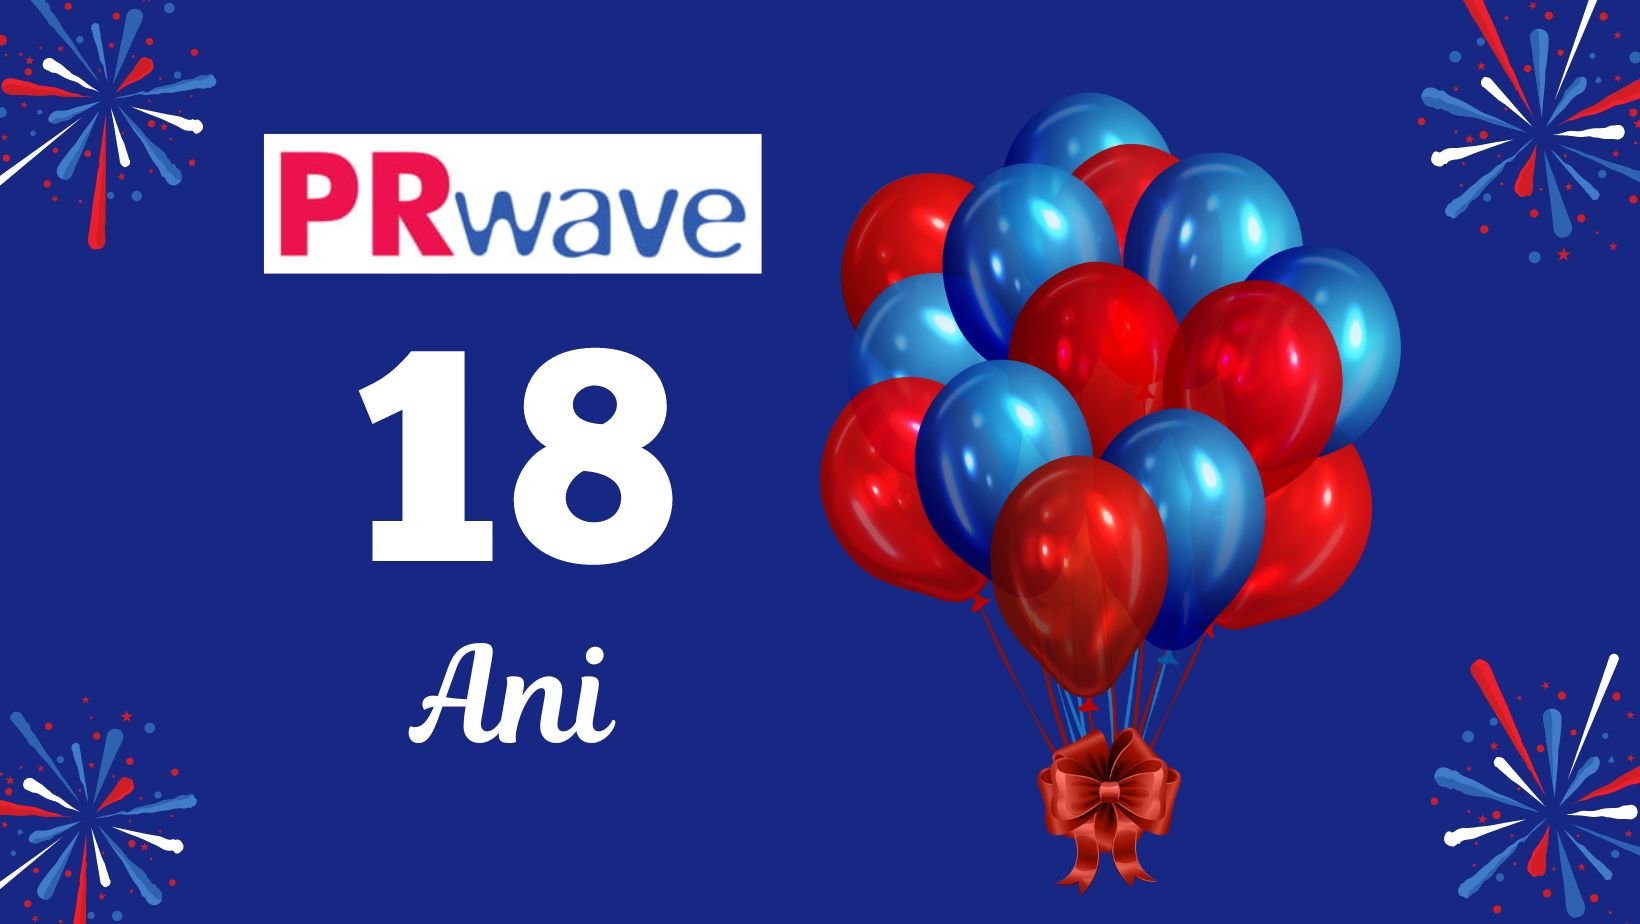 Majoratul PRwave.ro aniversat pe 18 aprilie